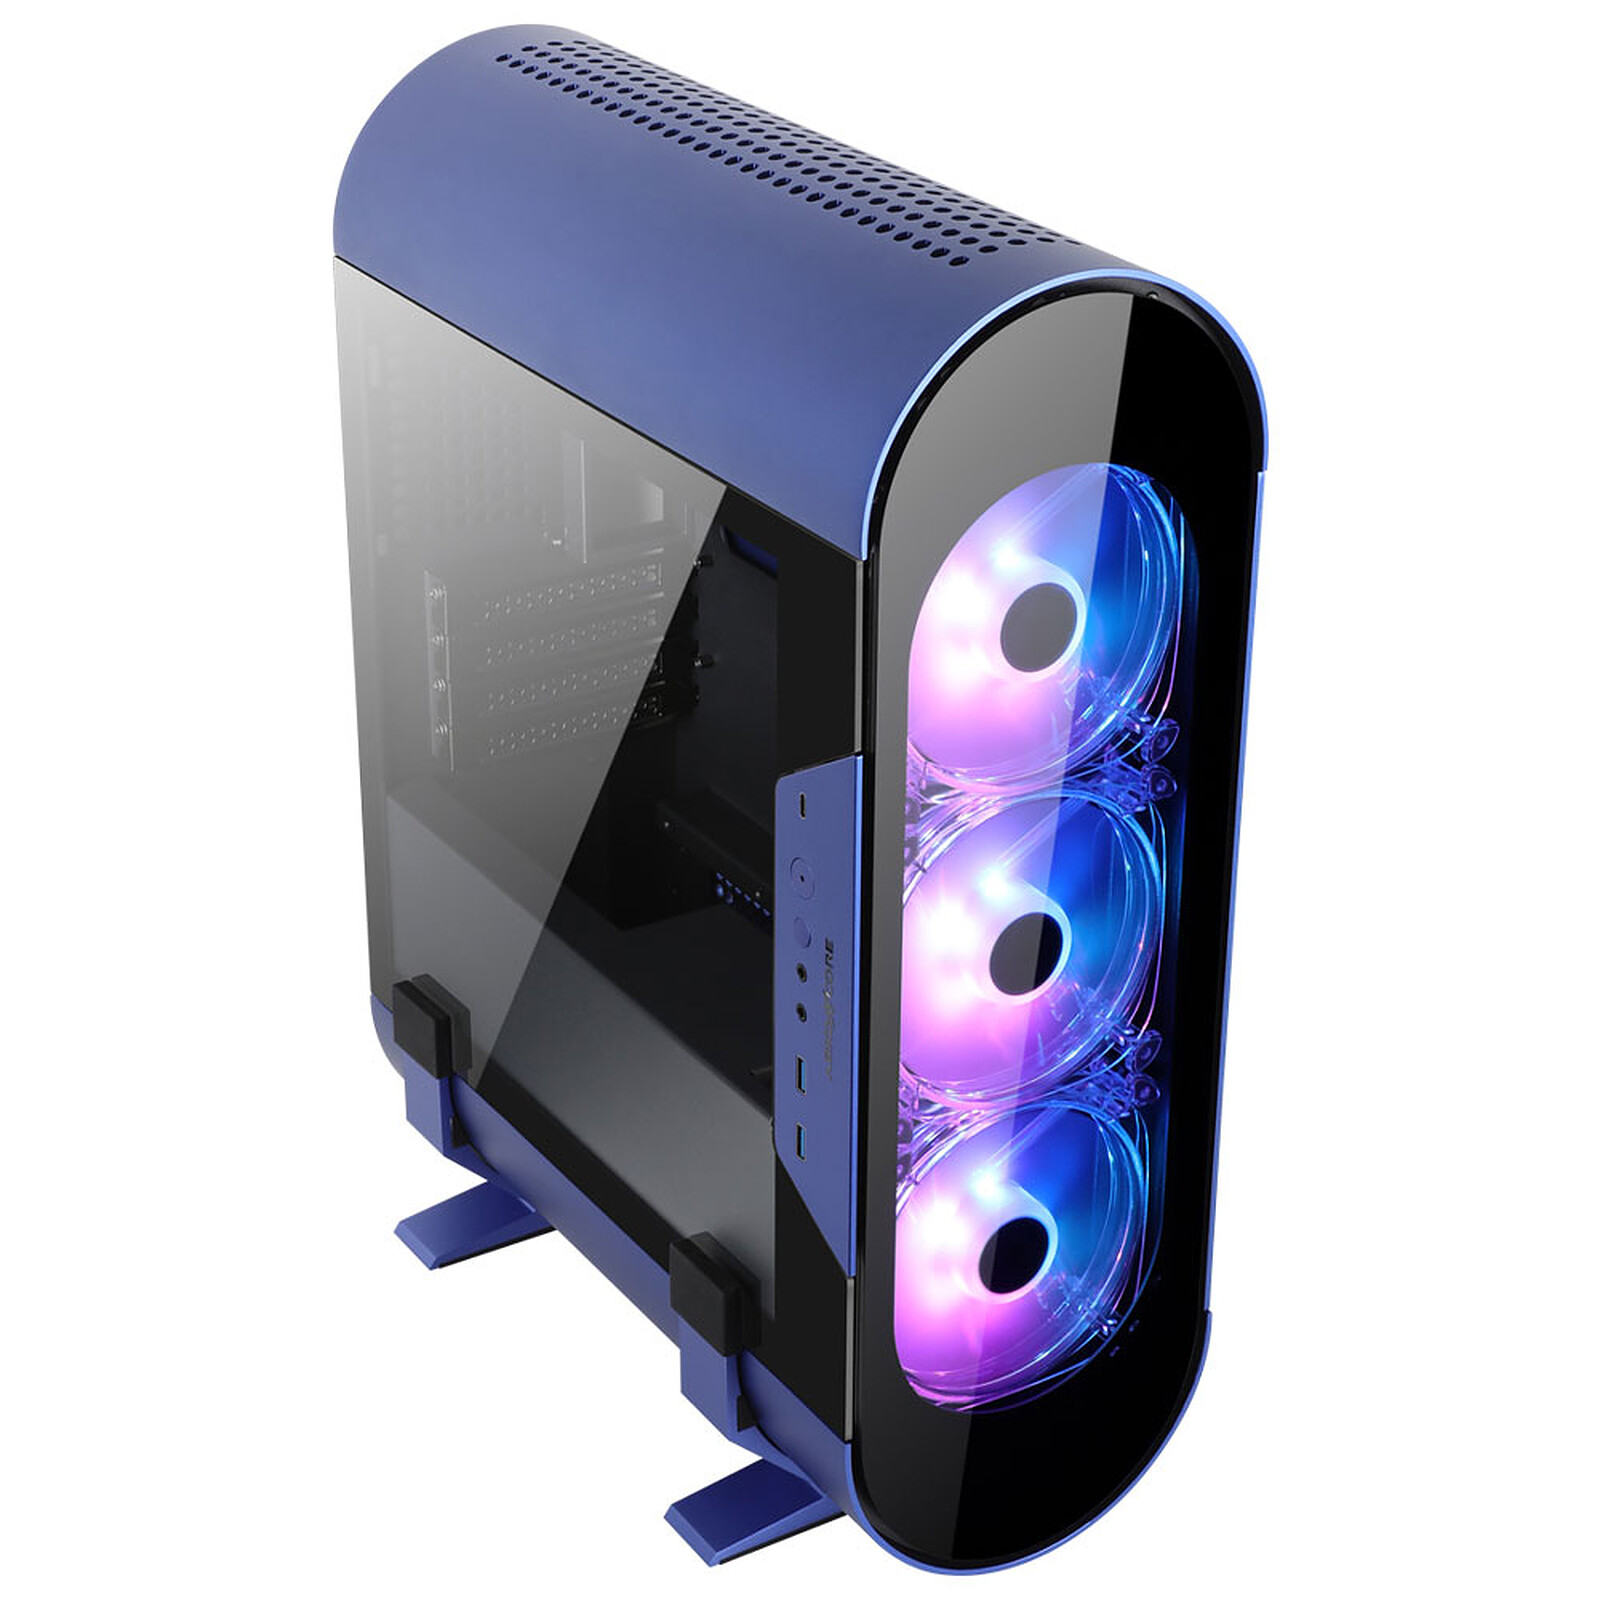 Tour PC Boitier sans Alimentation Façade Verre trempé LED Bleu Format Micro ATX 